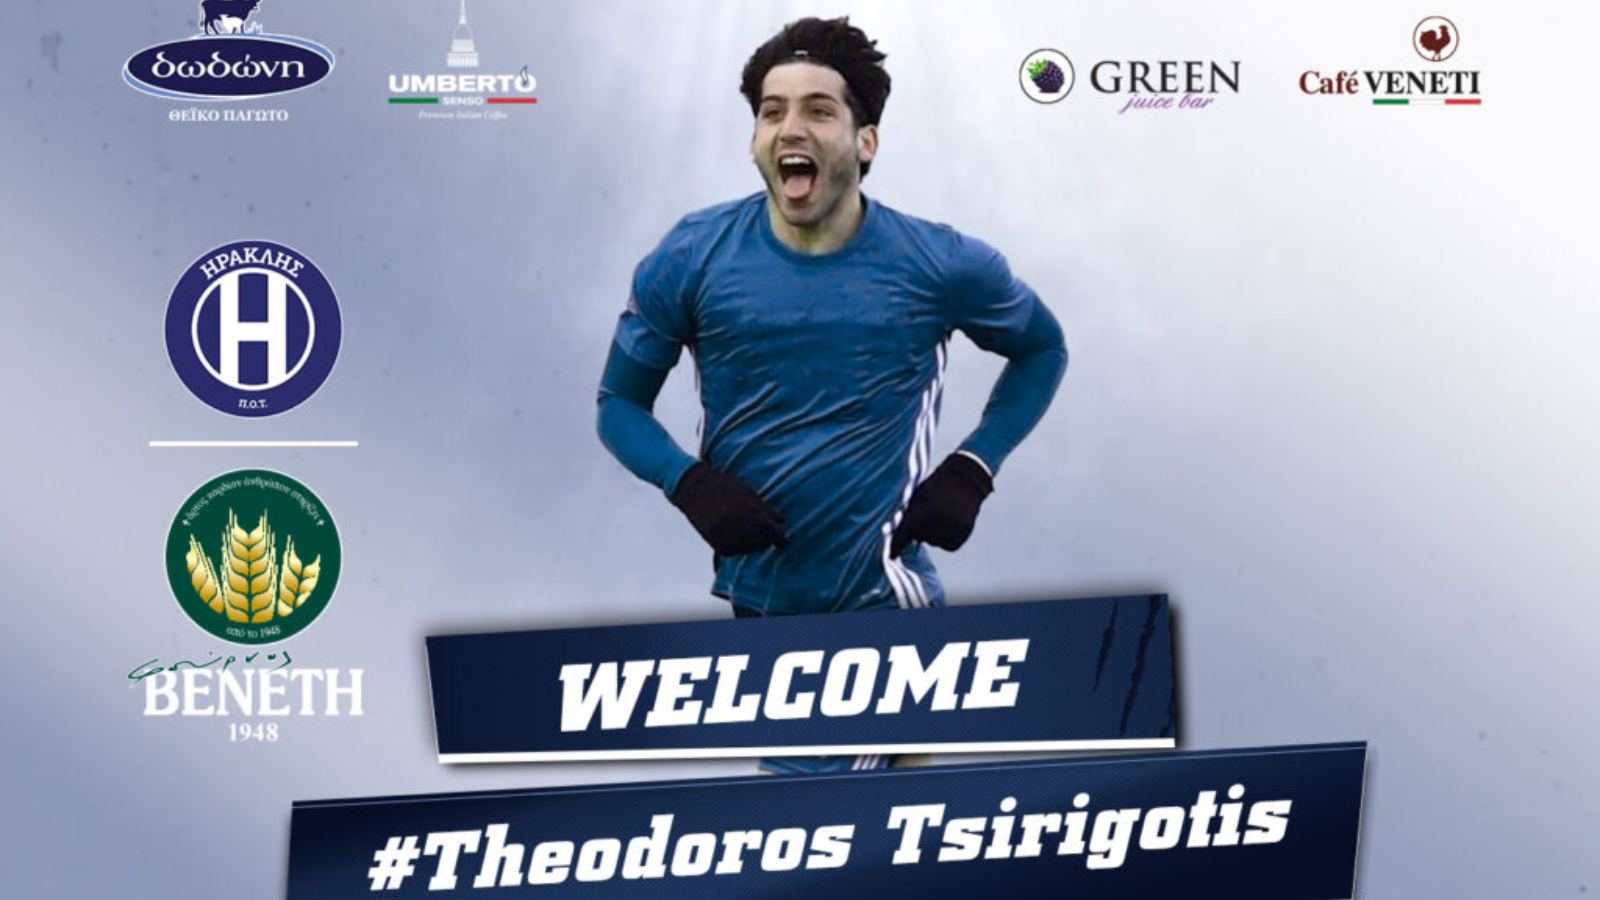 Την απόκτηση του Έλληνα ποδοσφαιριστή έκανε γνωστή μέσω ανακοίνωσης του ο Ηρακλής